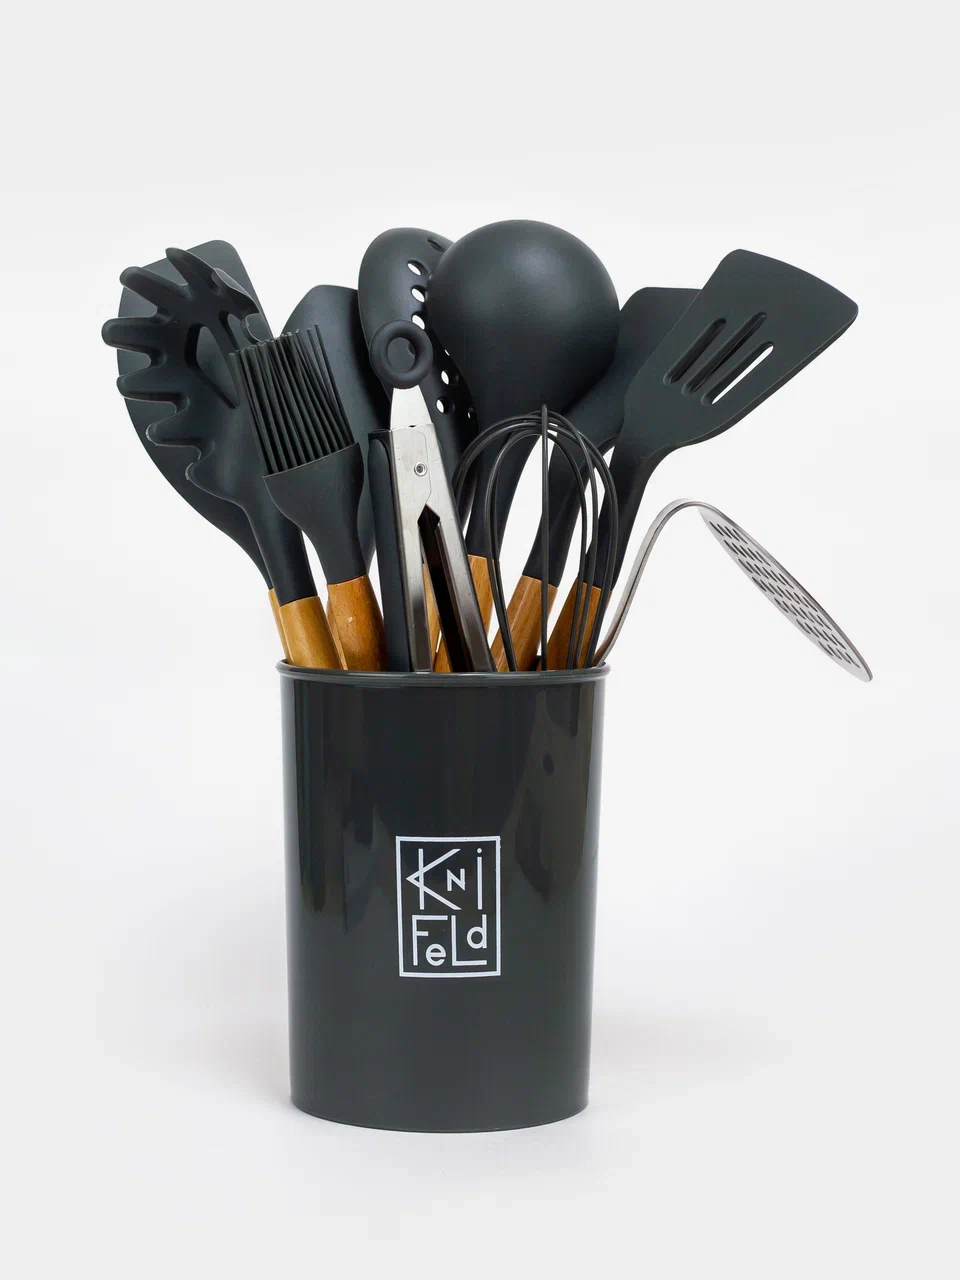 Набор кухонных принадлежностей Knifeld утварь для готовки и сервировки, темно-серый